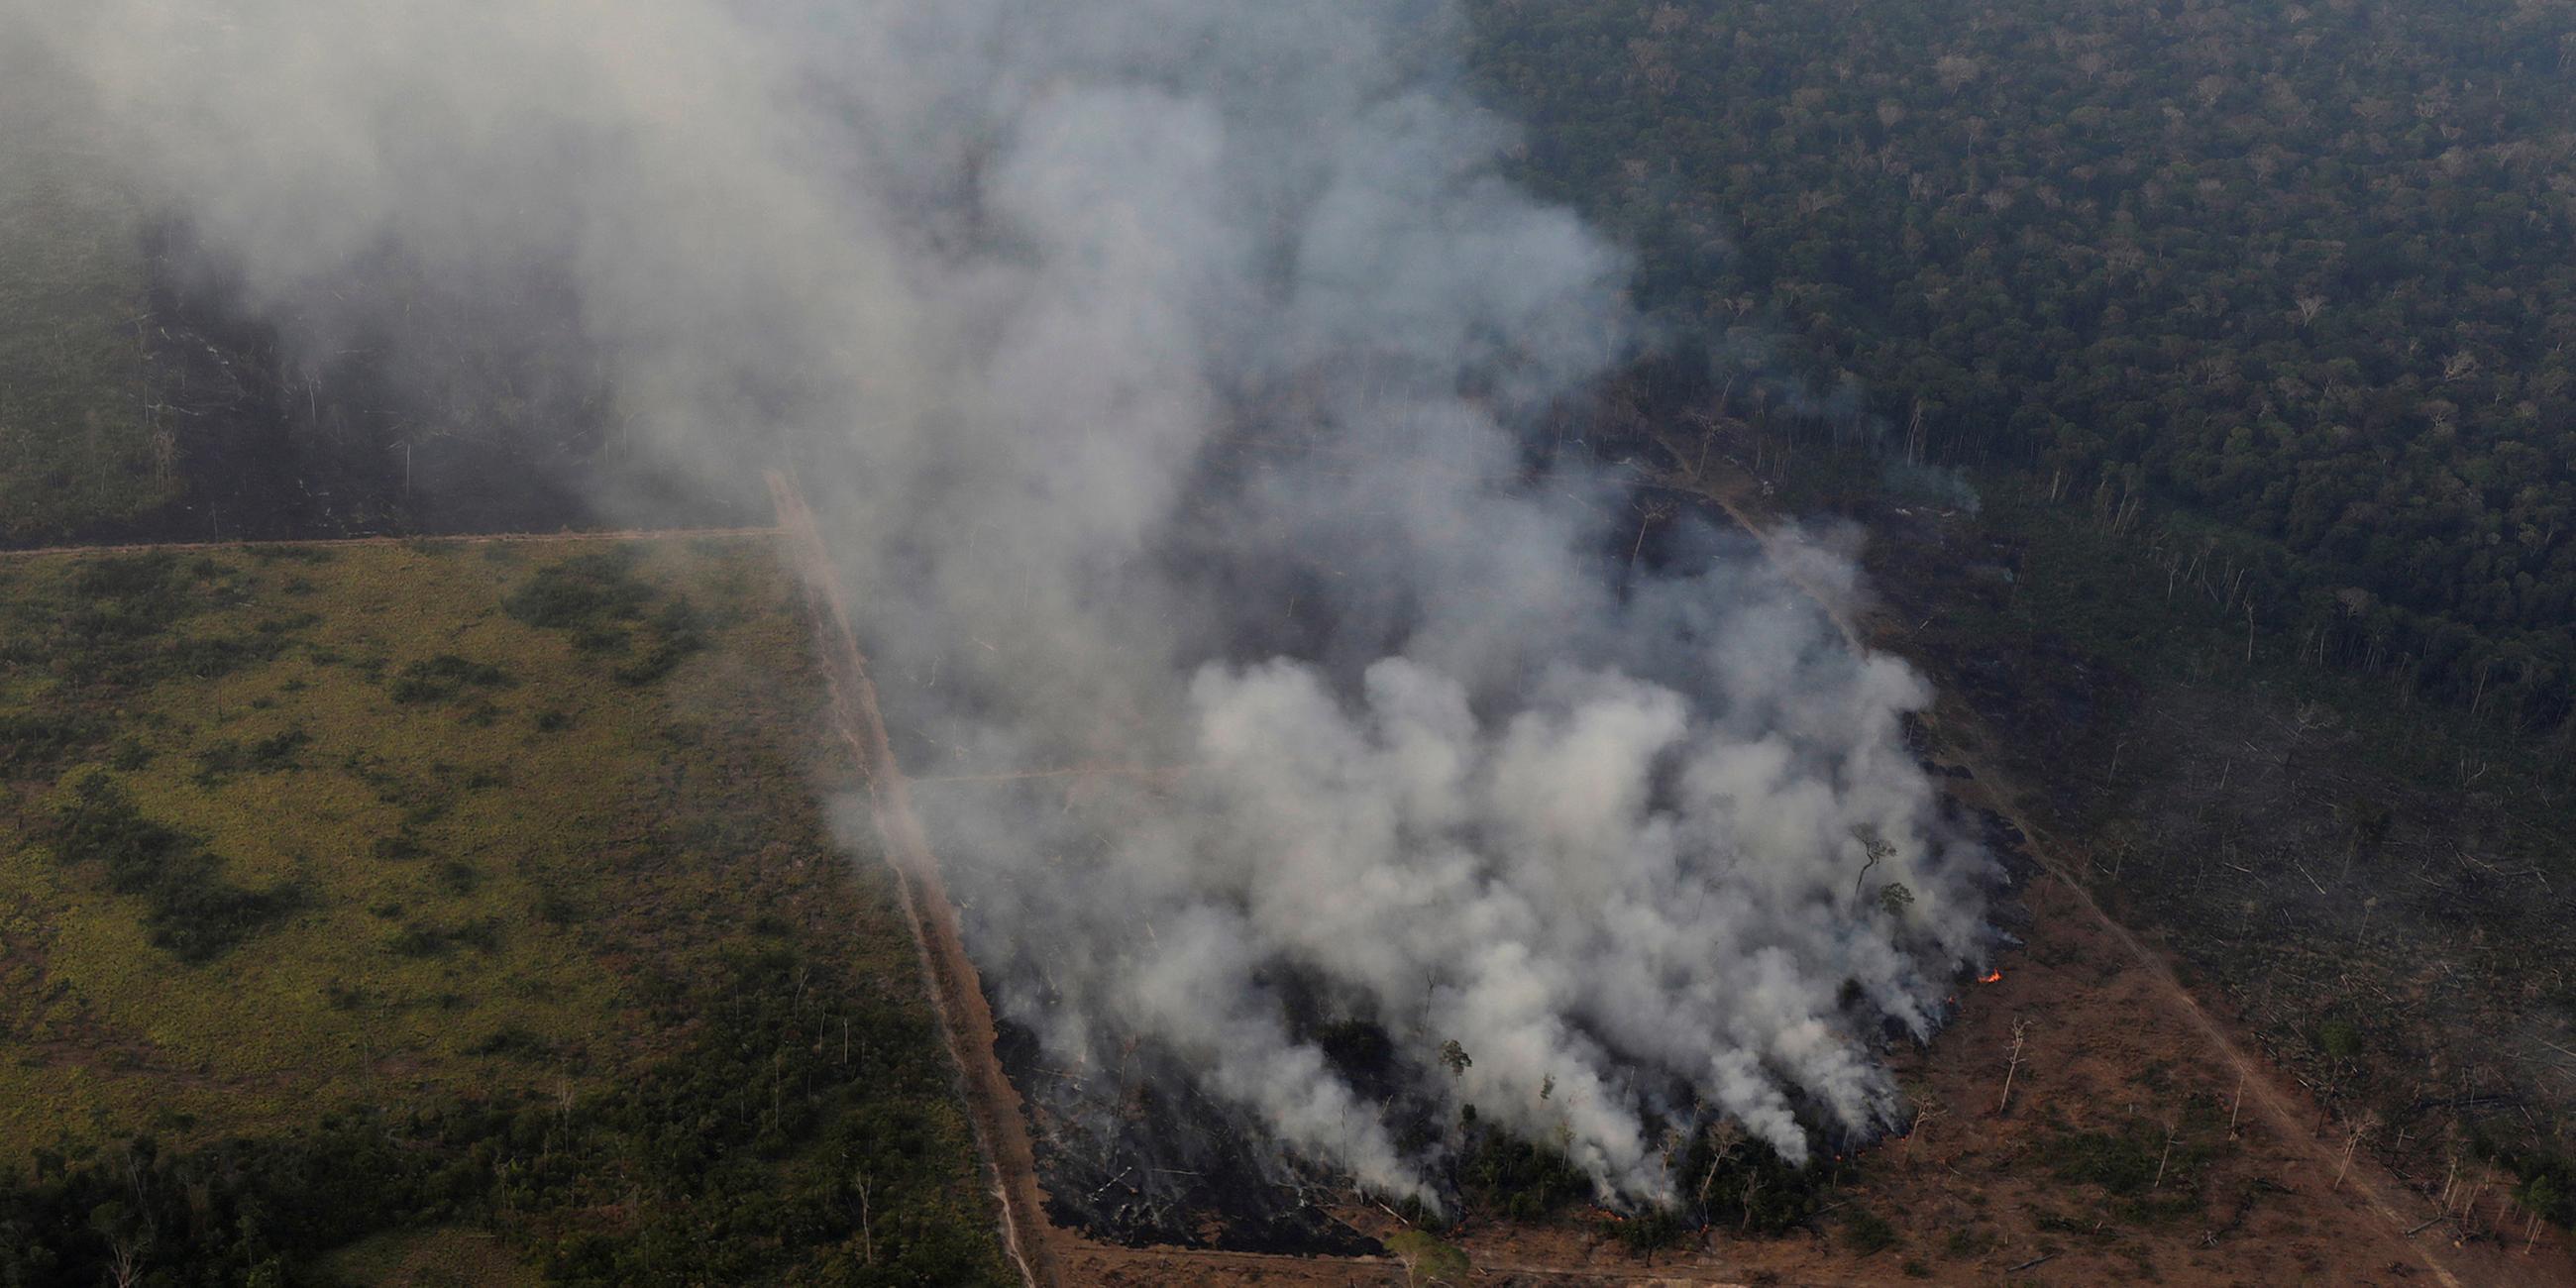 Archiv, Brasilien, Porto Velho: Flächenbrand im Regenwald von Amazonas.